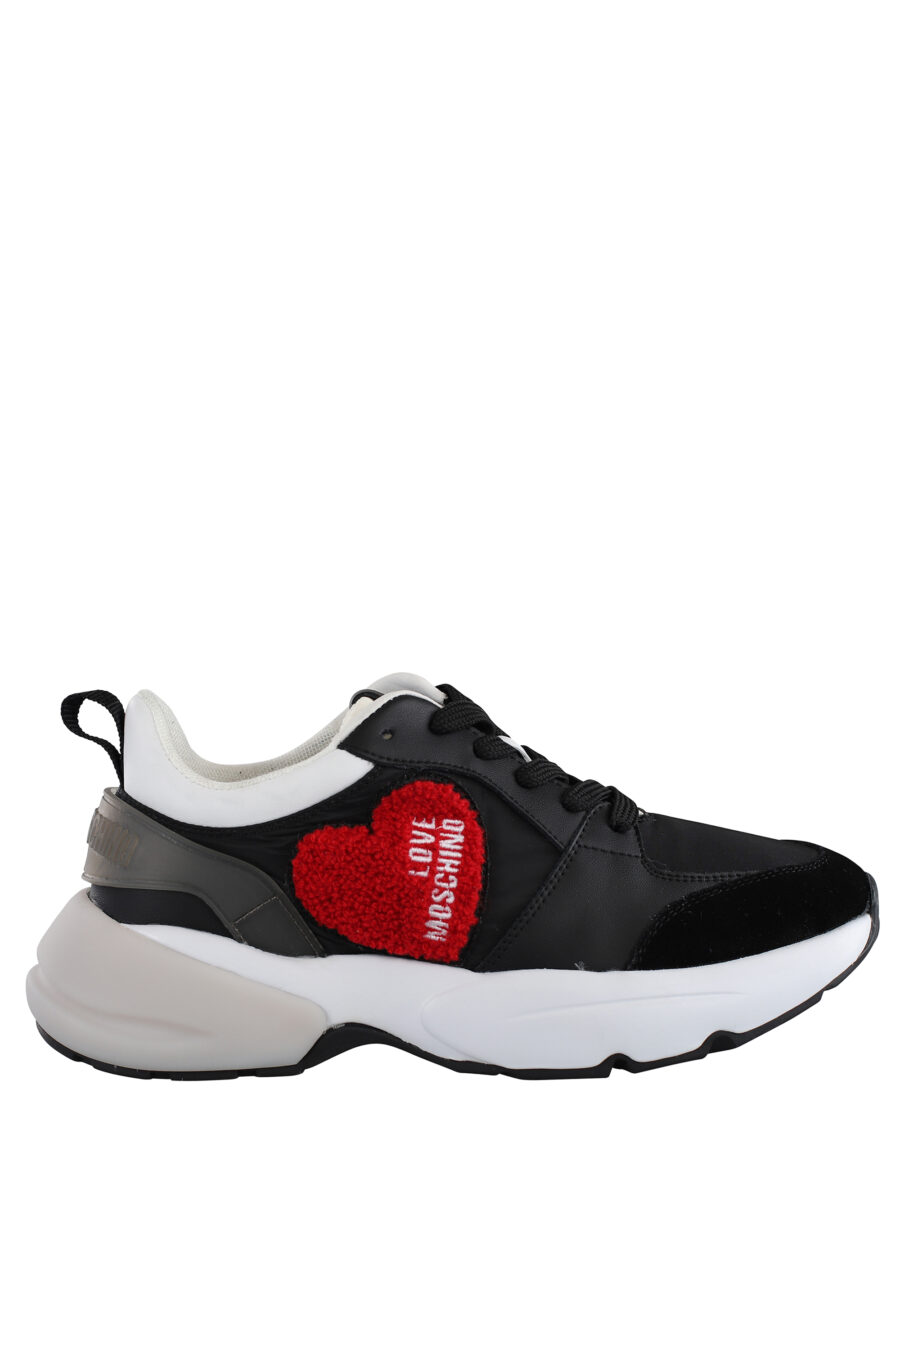 Zapatillas negras "sporty" con detalles blancos y corazón rojo bordado - IMG 7117